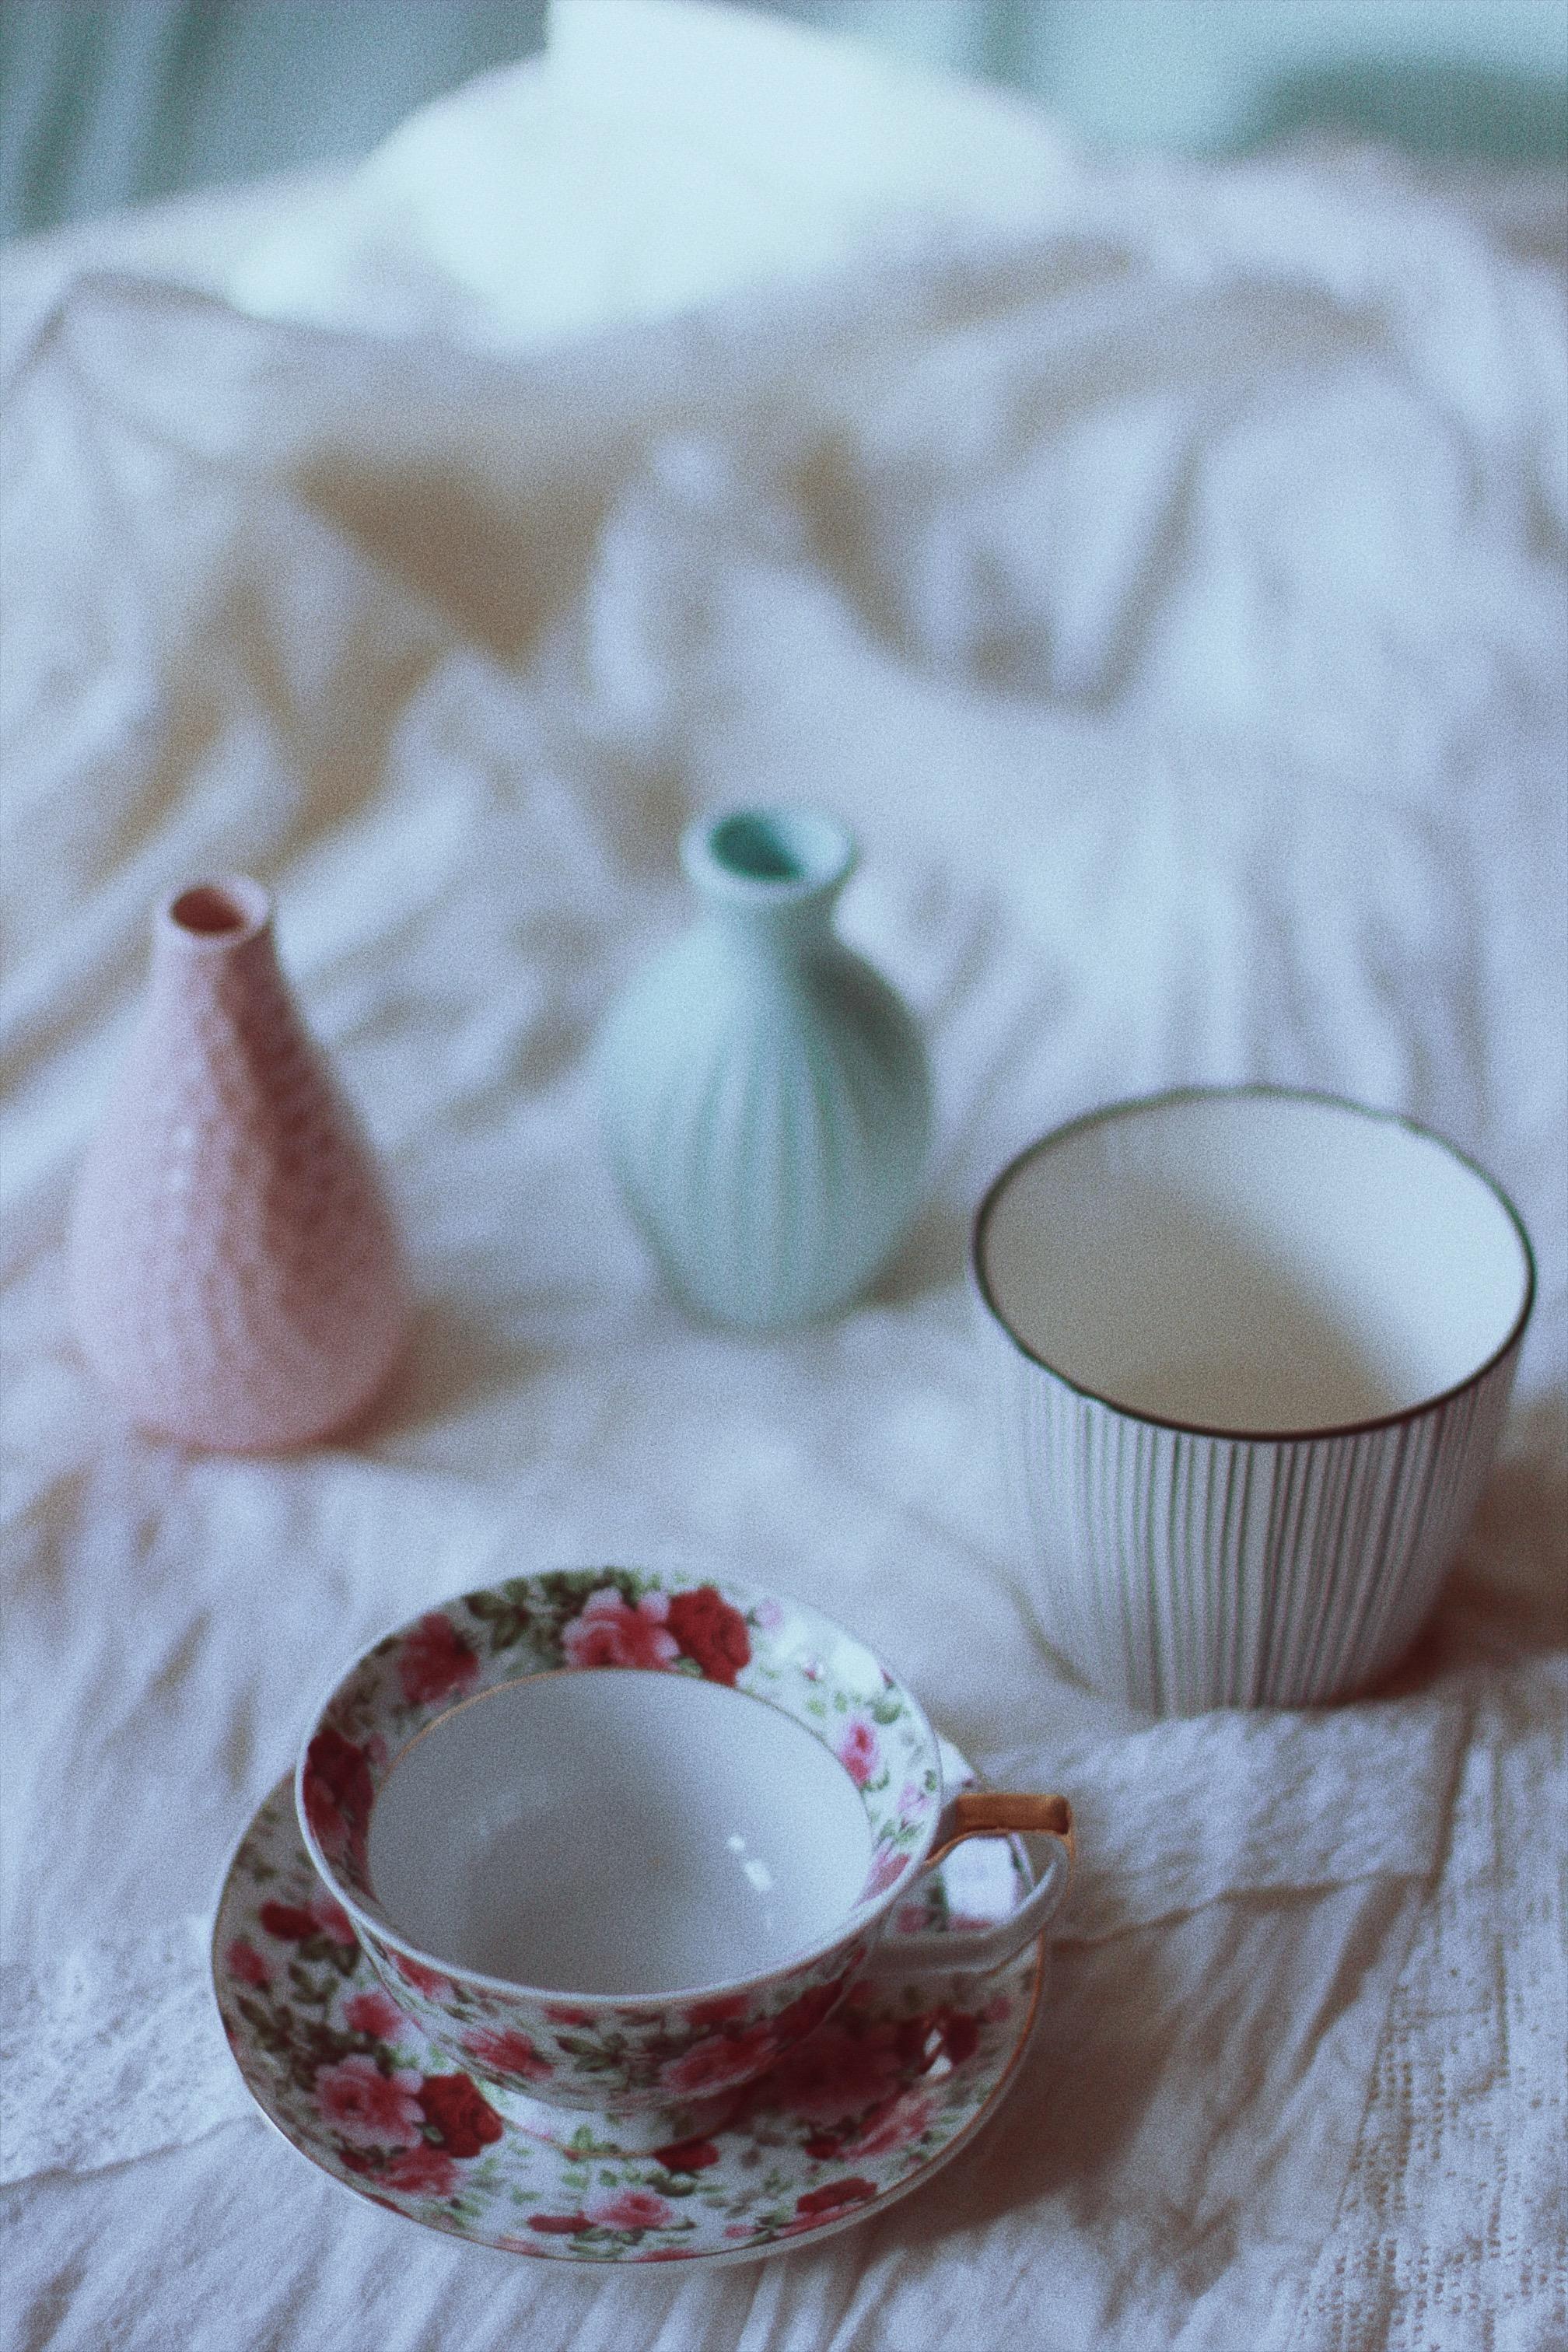 collections #ceramic#vase#deko#scandistyle#blumen#vintage#floral#couchliebt